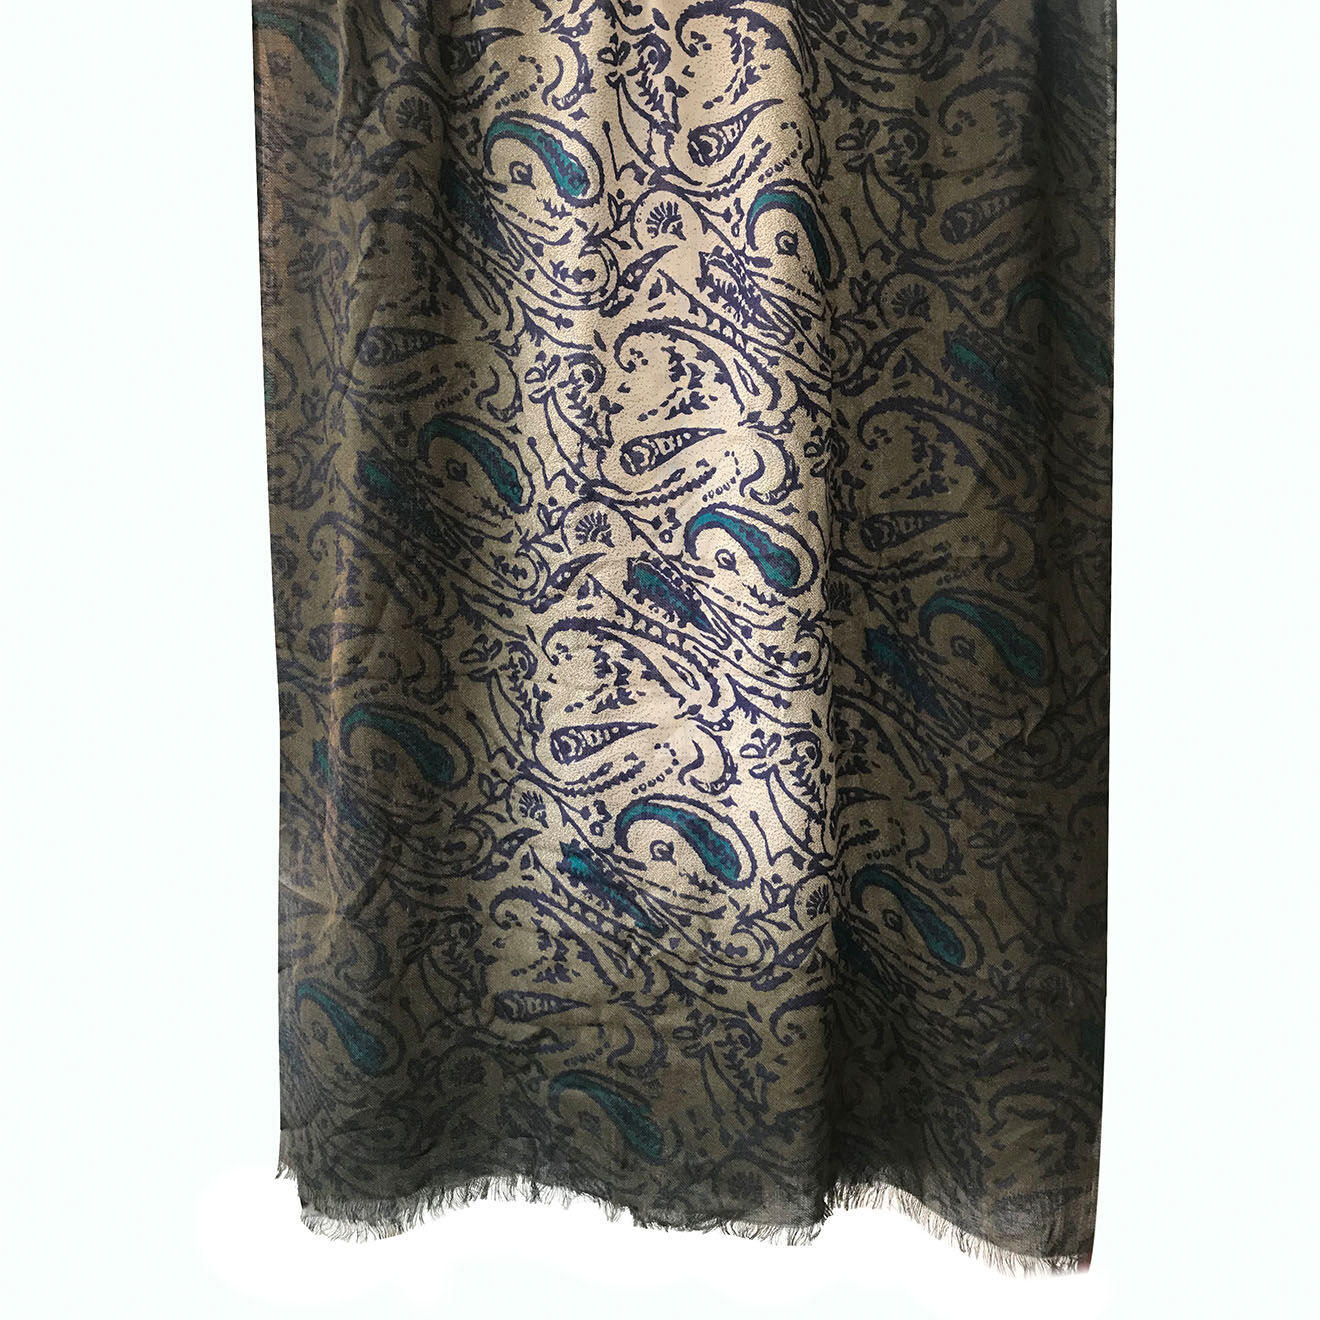 Foulard en Soie & Cachemire marron/turquoise paisley - 70x200 cm